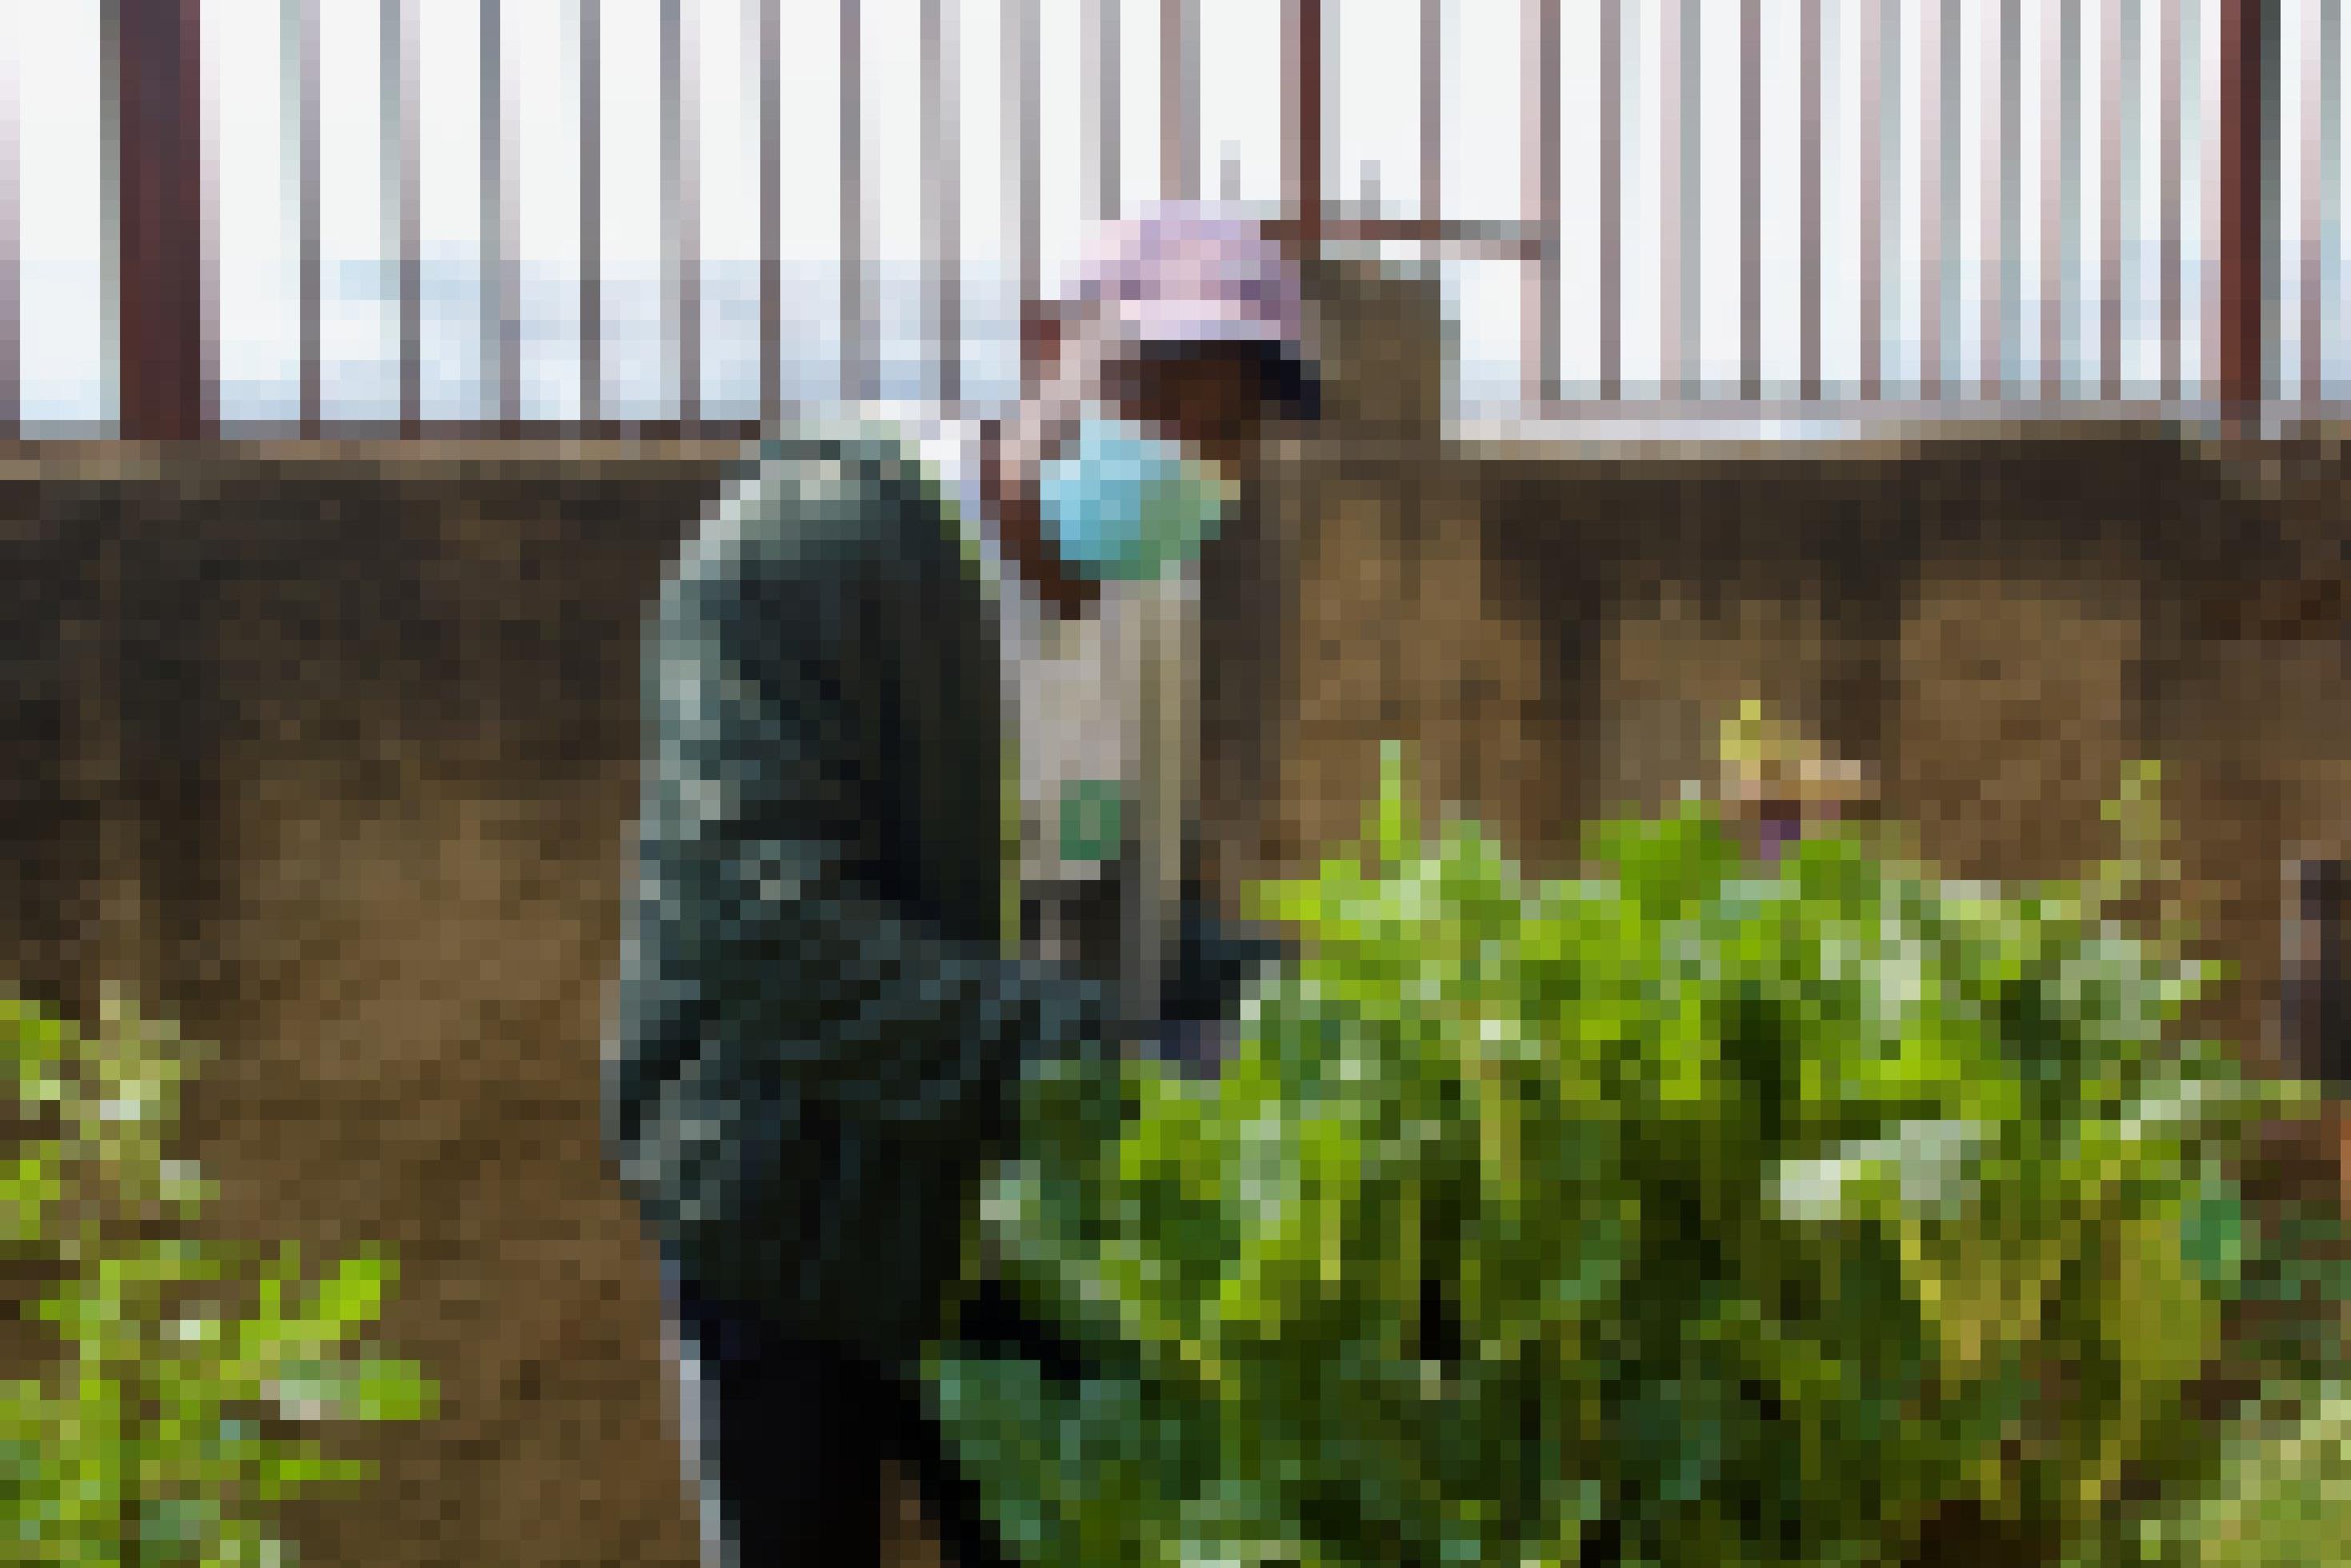 Ein junger Mann mit medizinischer Gesichtsmaske, leicht über einen Sack mit Gemüsepflanzen gebeugt. Er trägt eine Kapuzenjacke und eine Trainingshose. Im Hintergrund ist der Qualm zu sehen, der über der benachbarten Müllhalde aufsteigt.